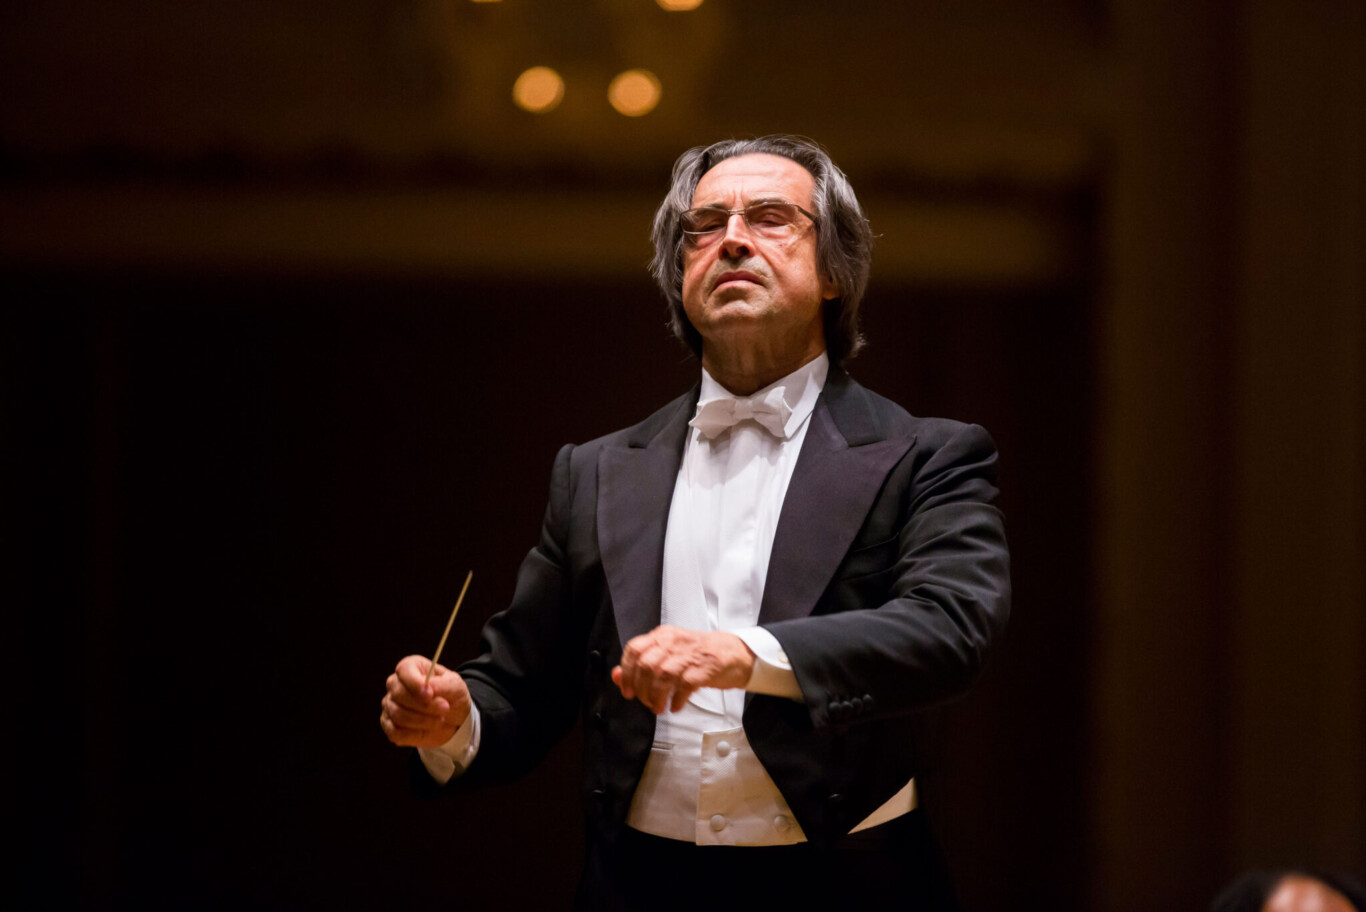 Dirigiert das Neujahrskonzert der Wiener Philharmoniker bereits zum sechsten Mal: Riccardo Muti